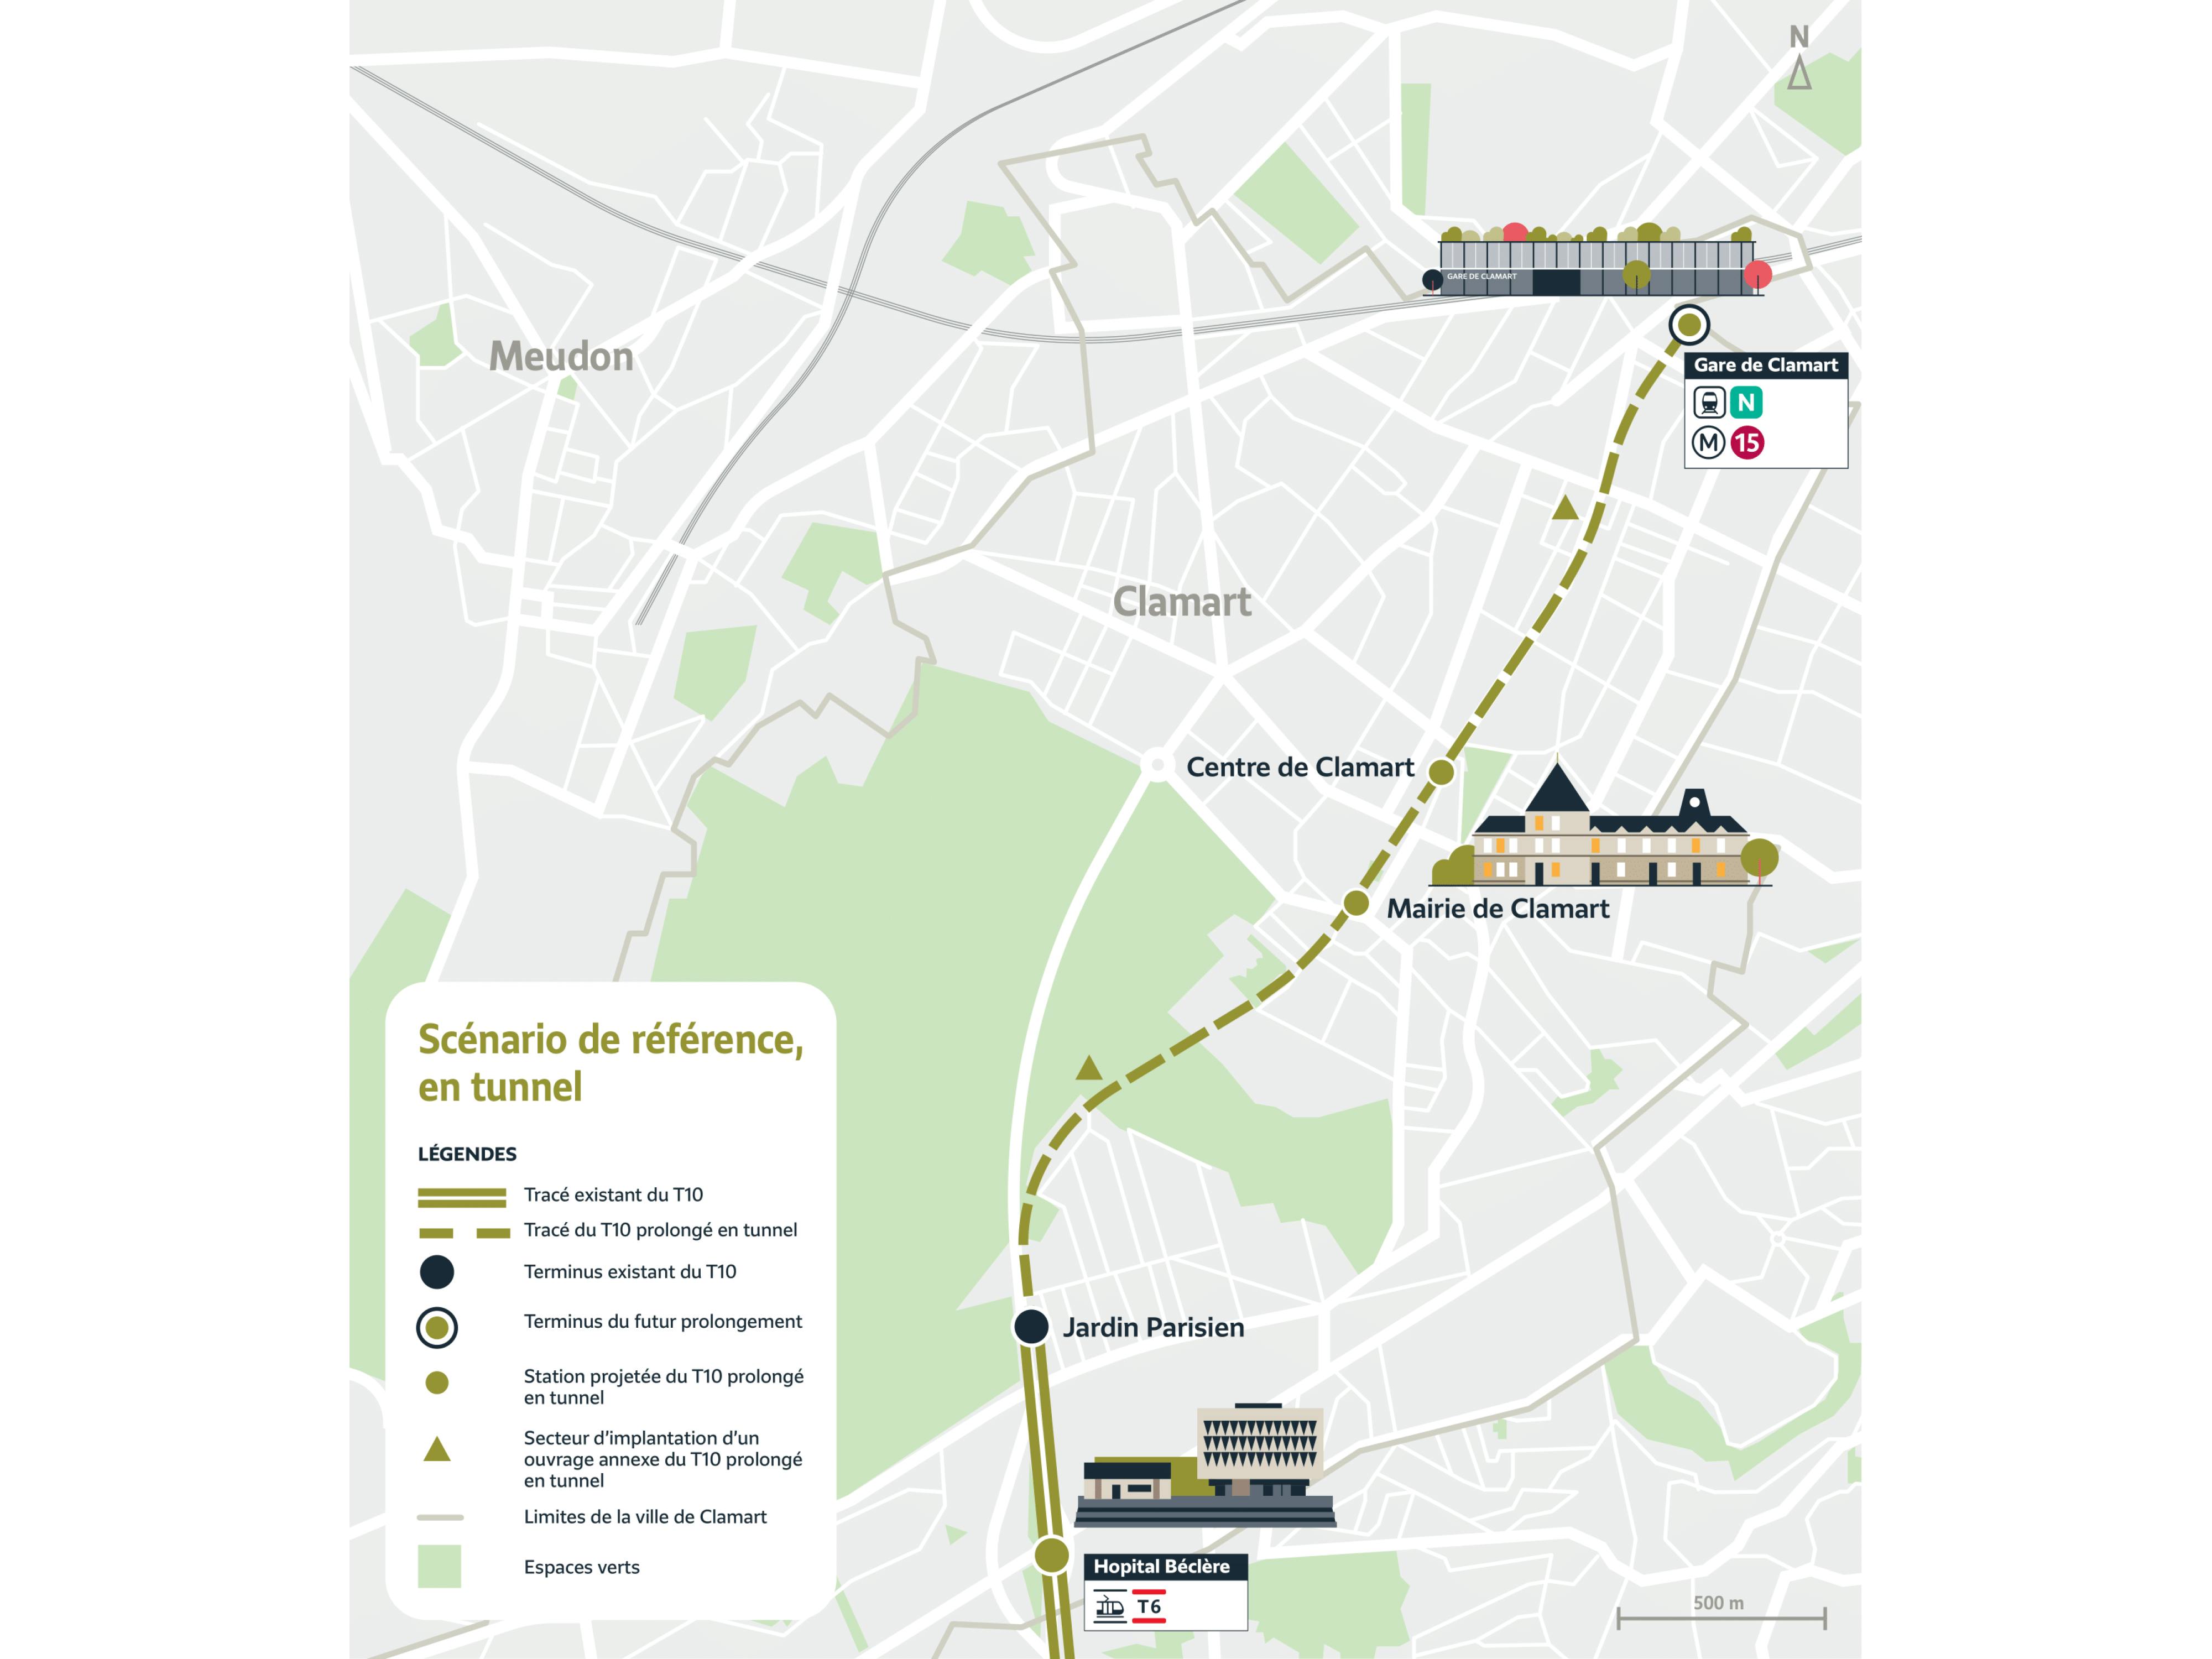 Carte du tracé en tunnel du prolongement du tram T10. Le tracé part de Jardin Parisien et dessert les stations Mairie de Clamart puis Centre de Clamart avant d'arriver à son terminus Gare de Clamart. (tracé indicatif)